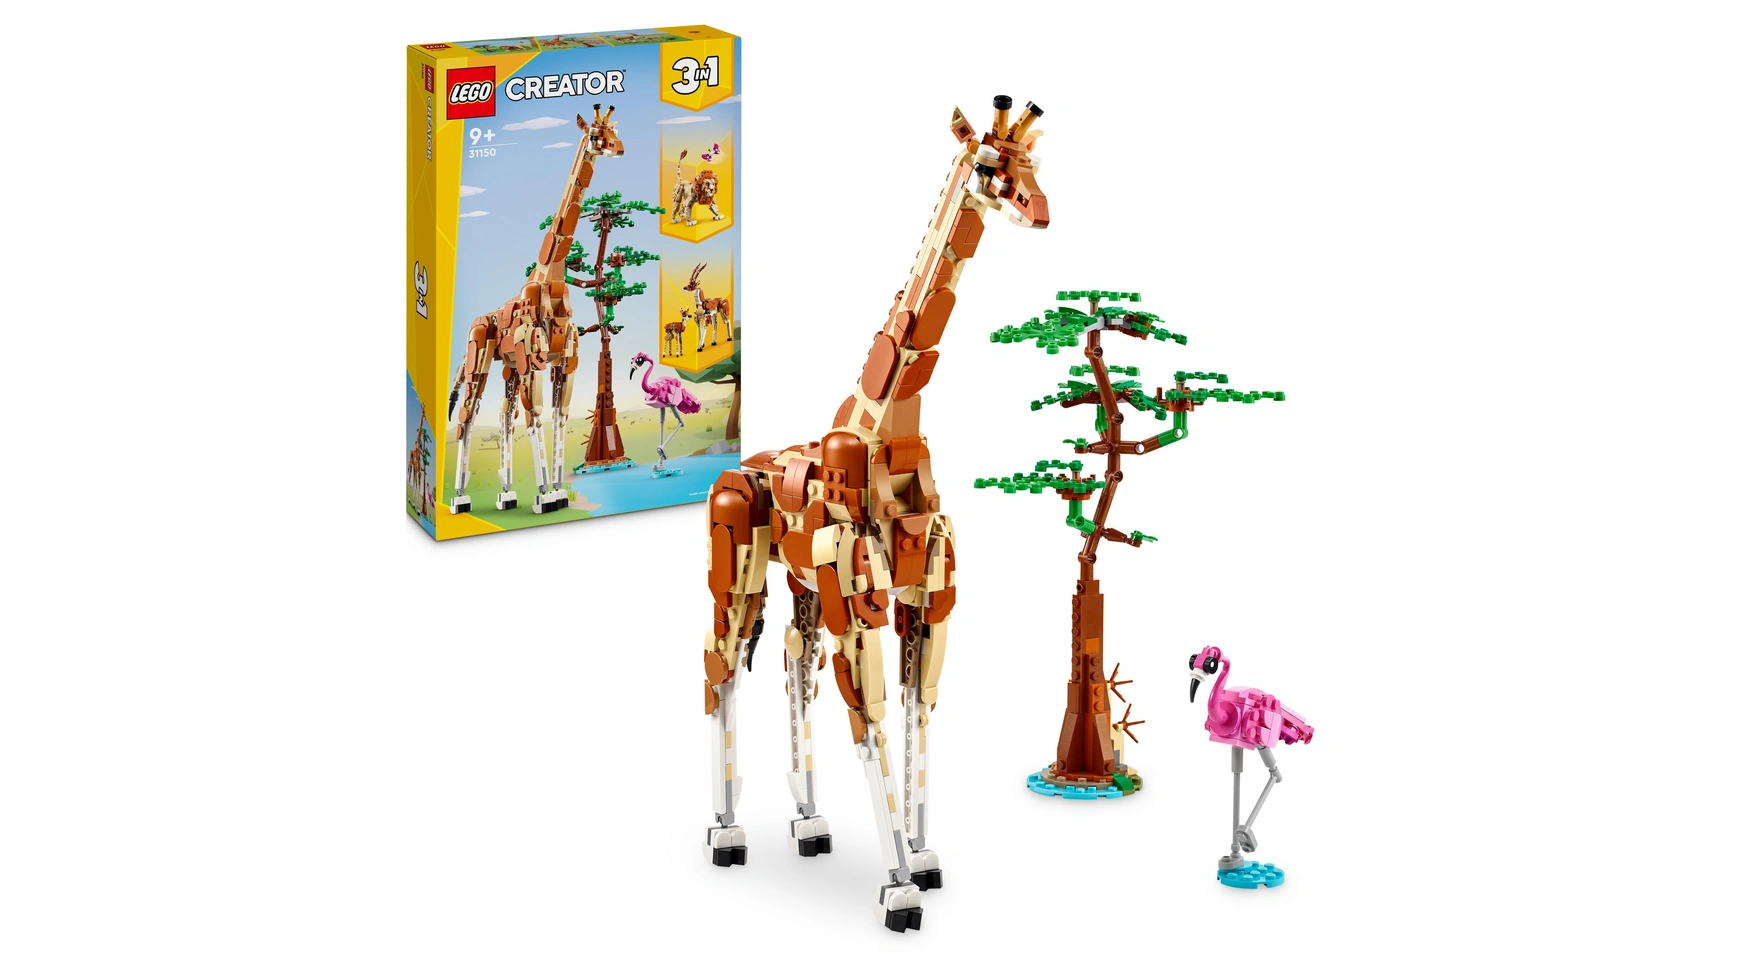 Lego Creator 3in1 Animal Safari, набор животных со львом, жирафом и газелью